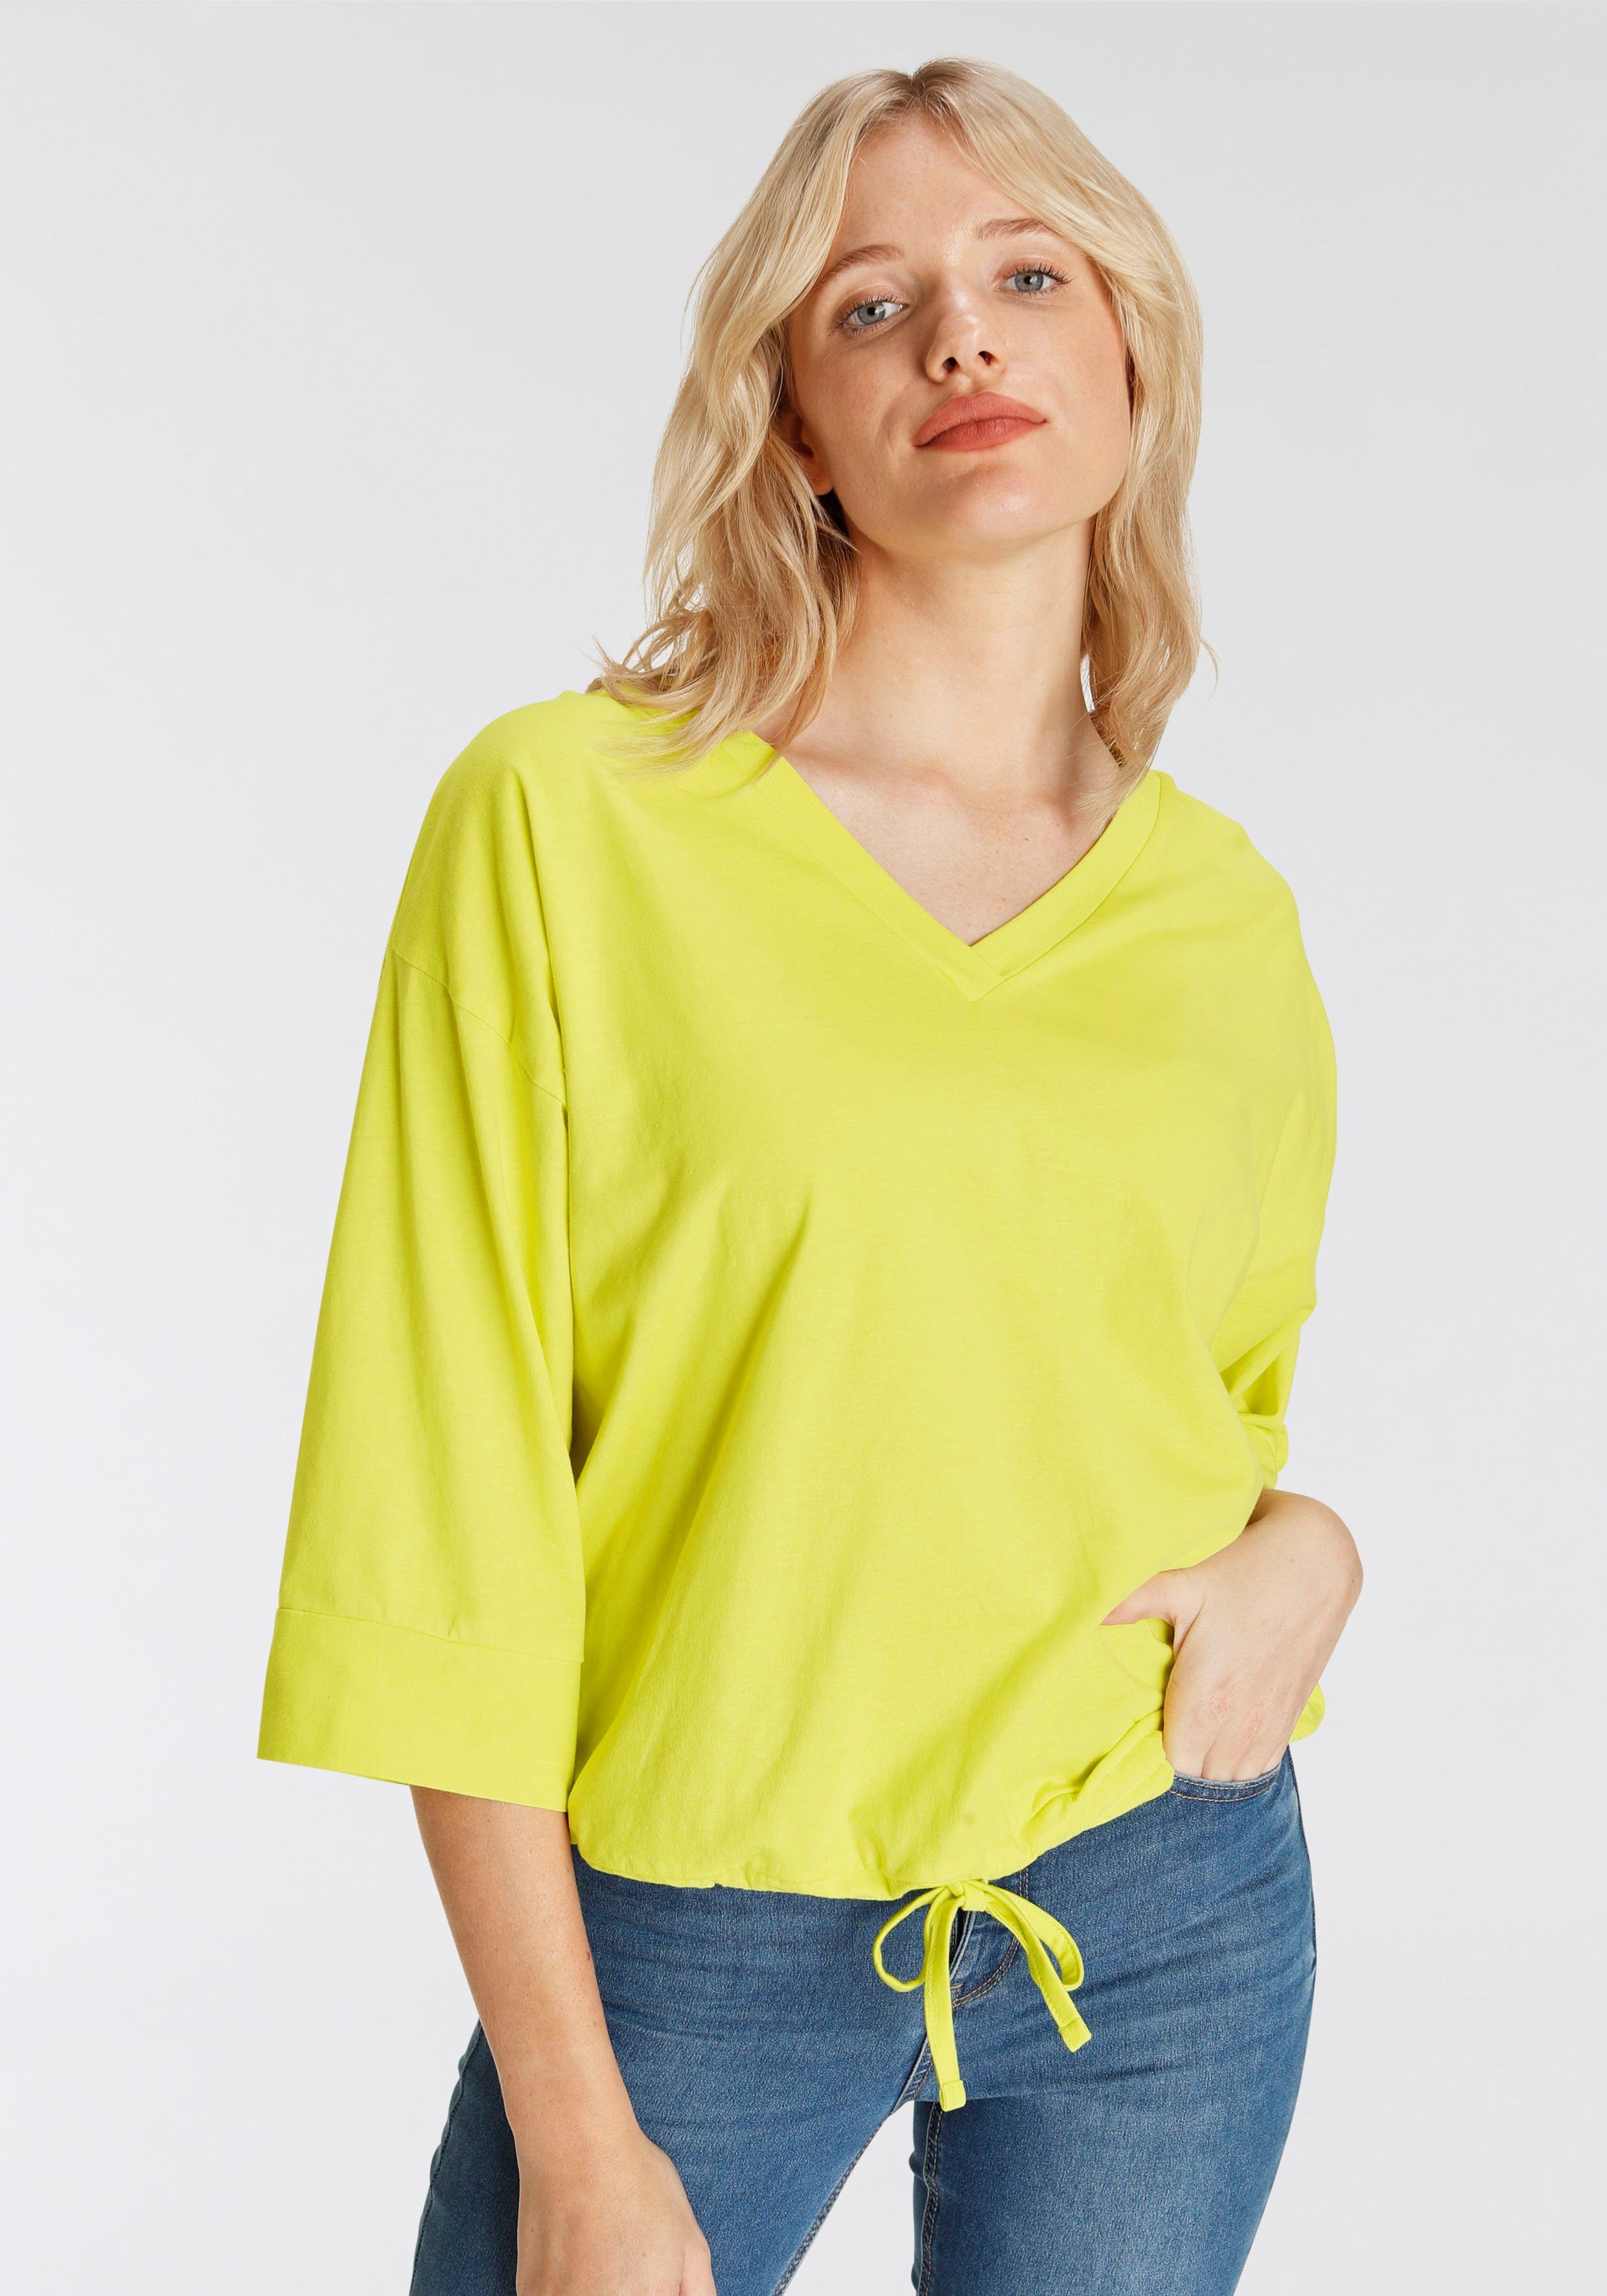 Boysen's Fledermausshirt Saum mit Web-Einfassung und Tunnelzug limone | Fledermausshirts